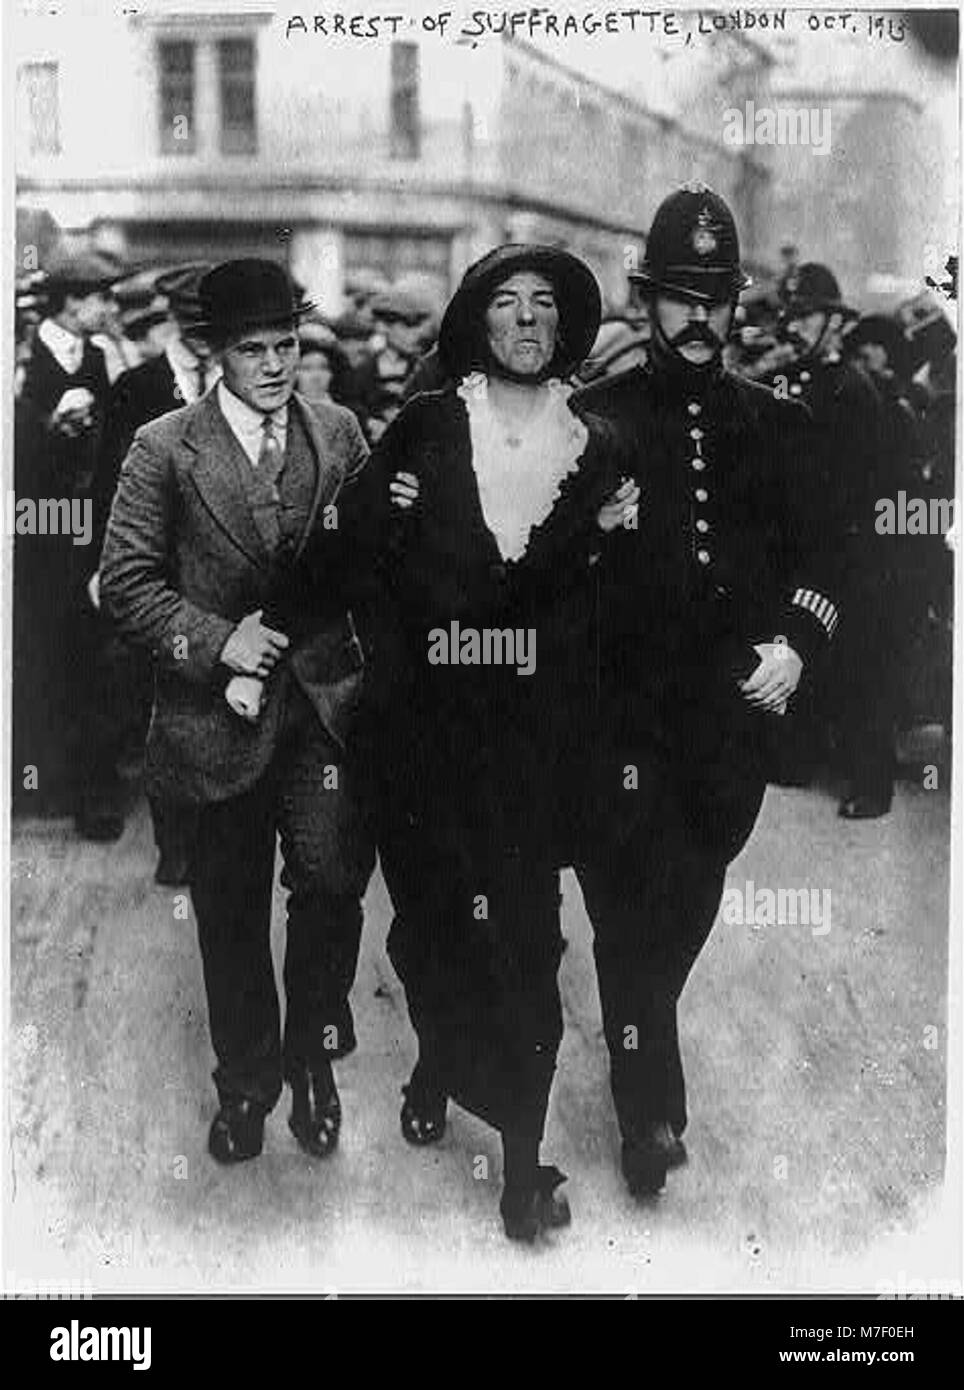 Suffragettes - Londra - Arresto di Suffragette - Ott. 1913 LCCN2003653981 Foto Stock